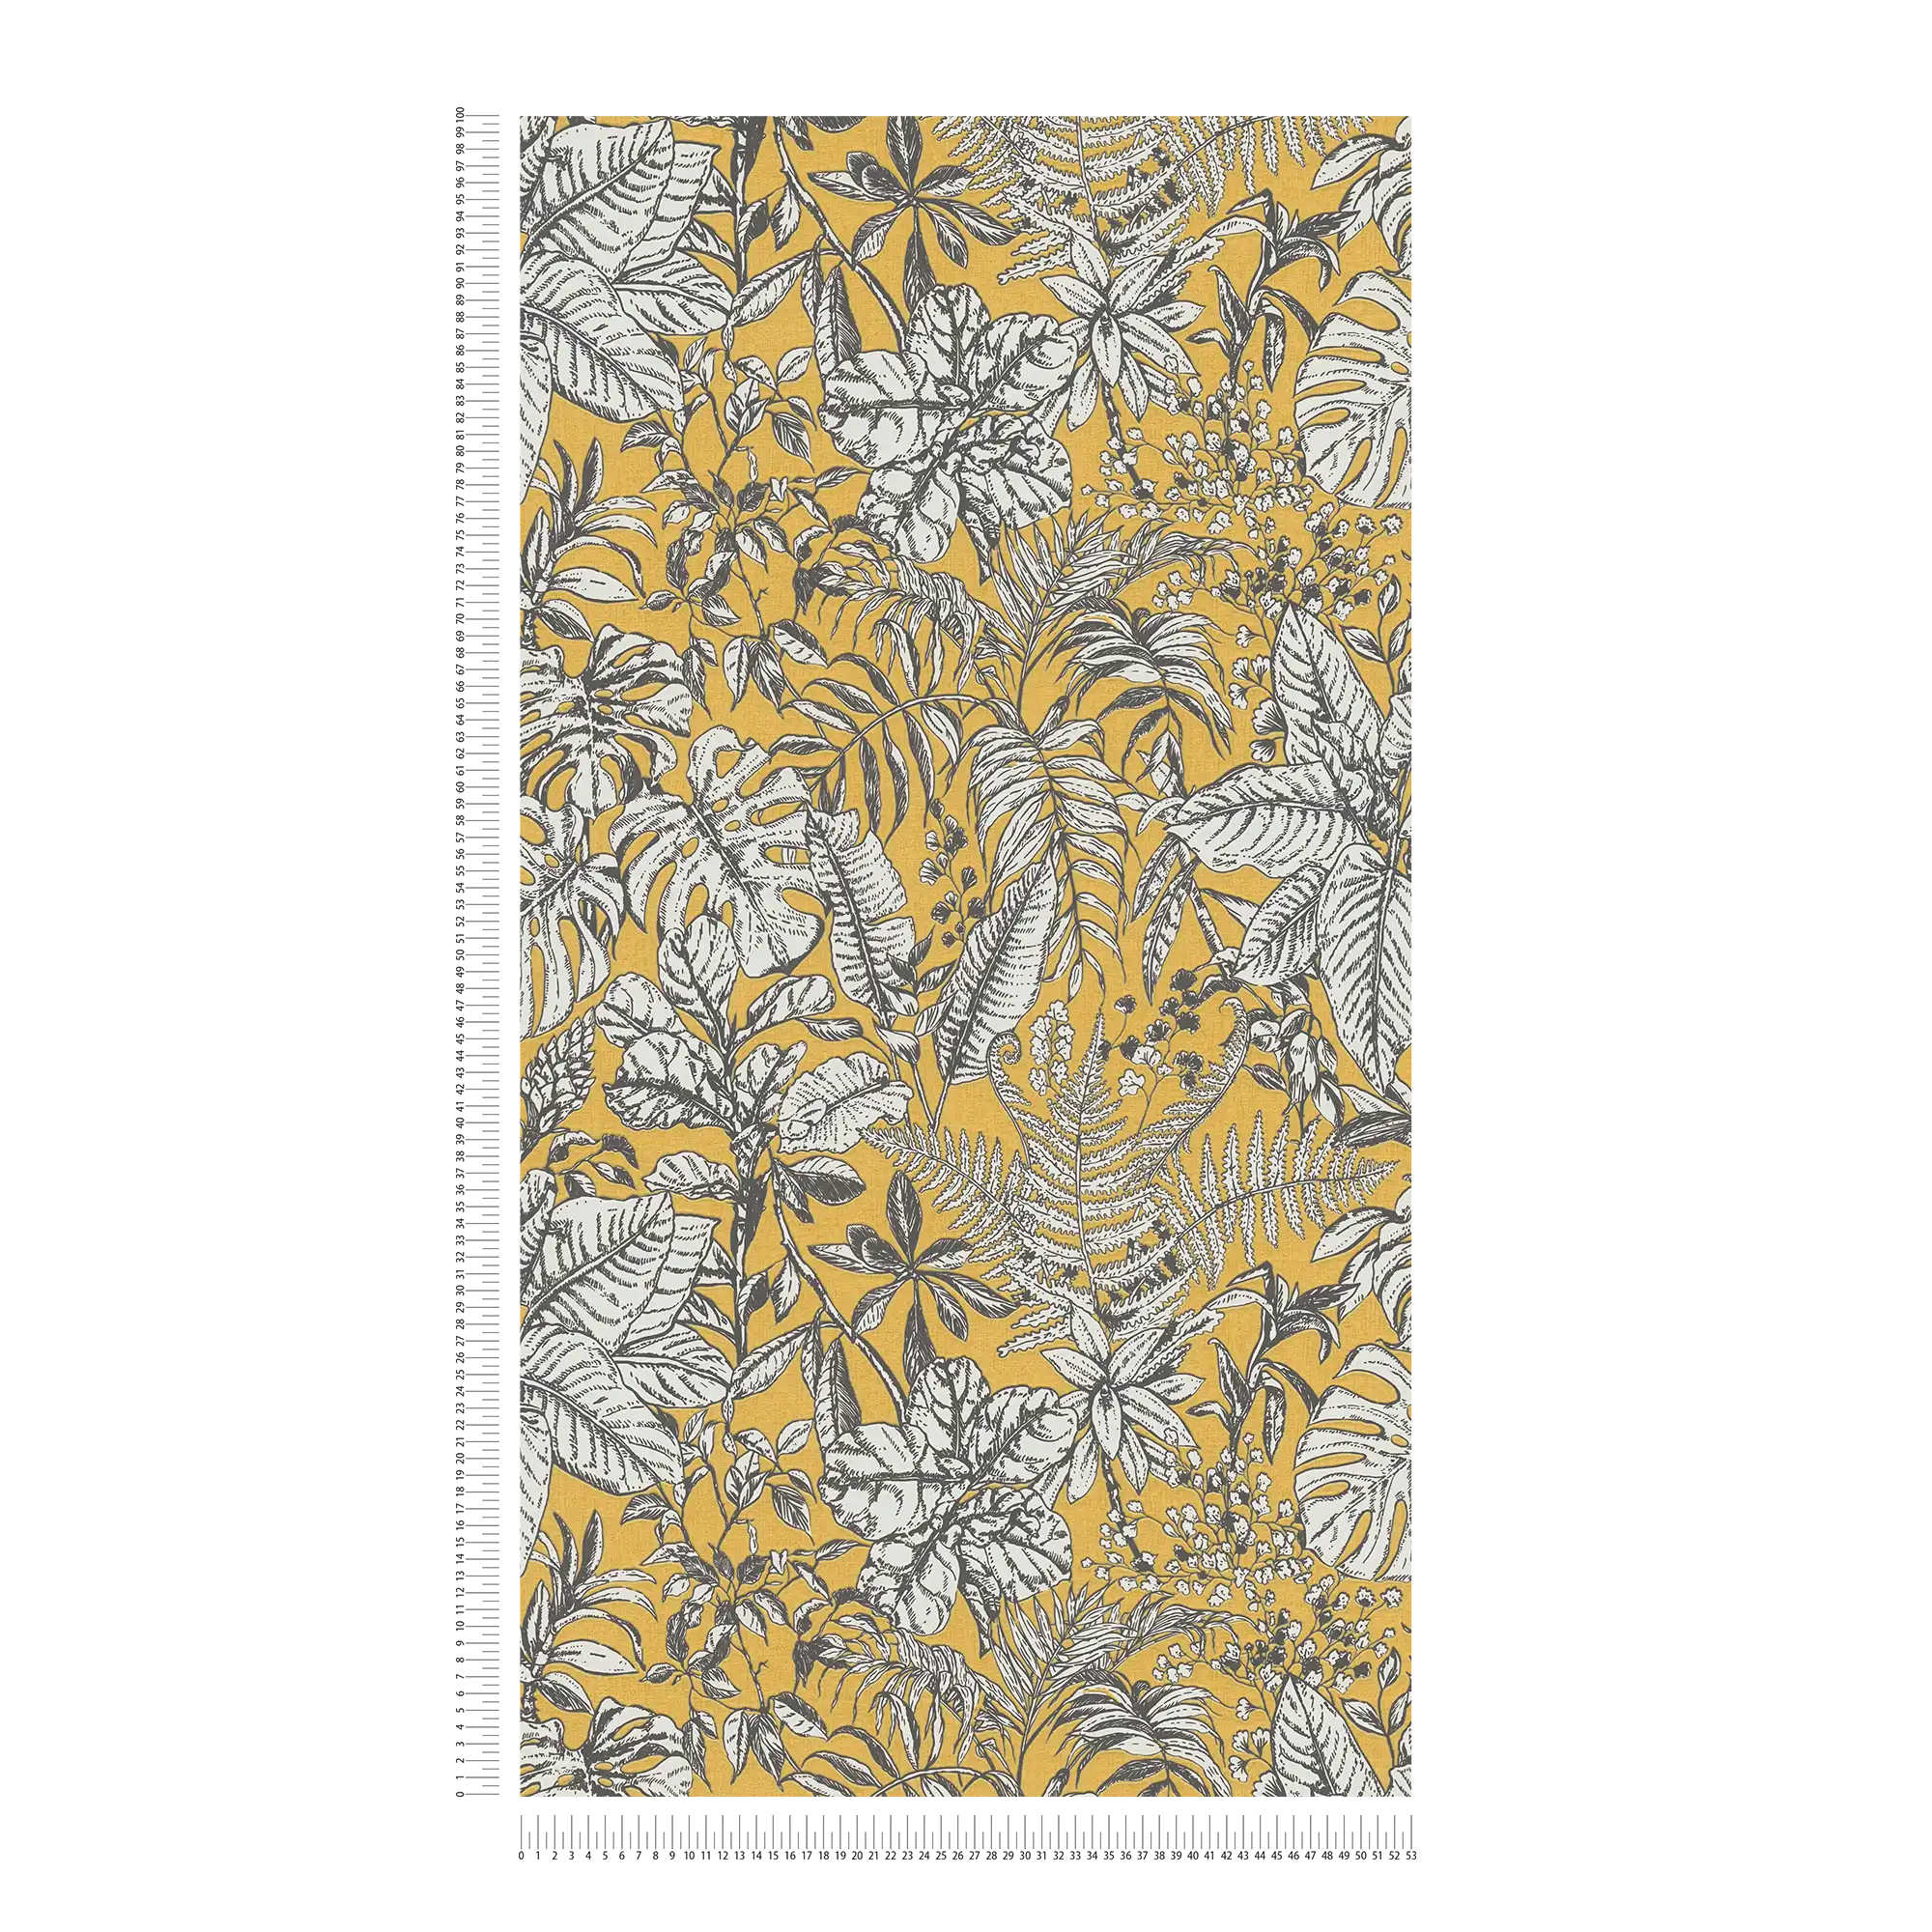             Papel pintado no tejido selva, hojas de monstera y helechos - amarillo, blanco, gris
        